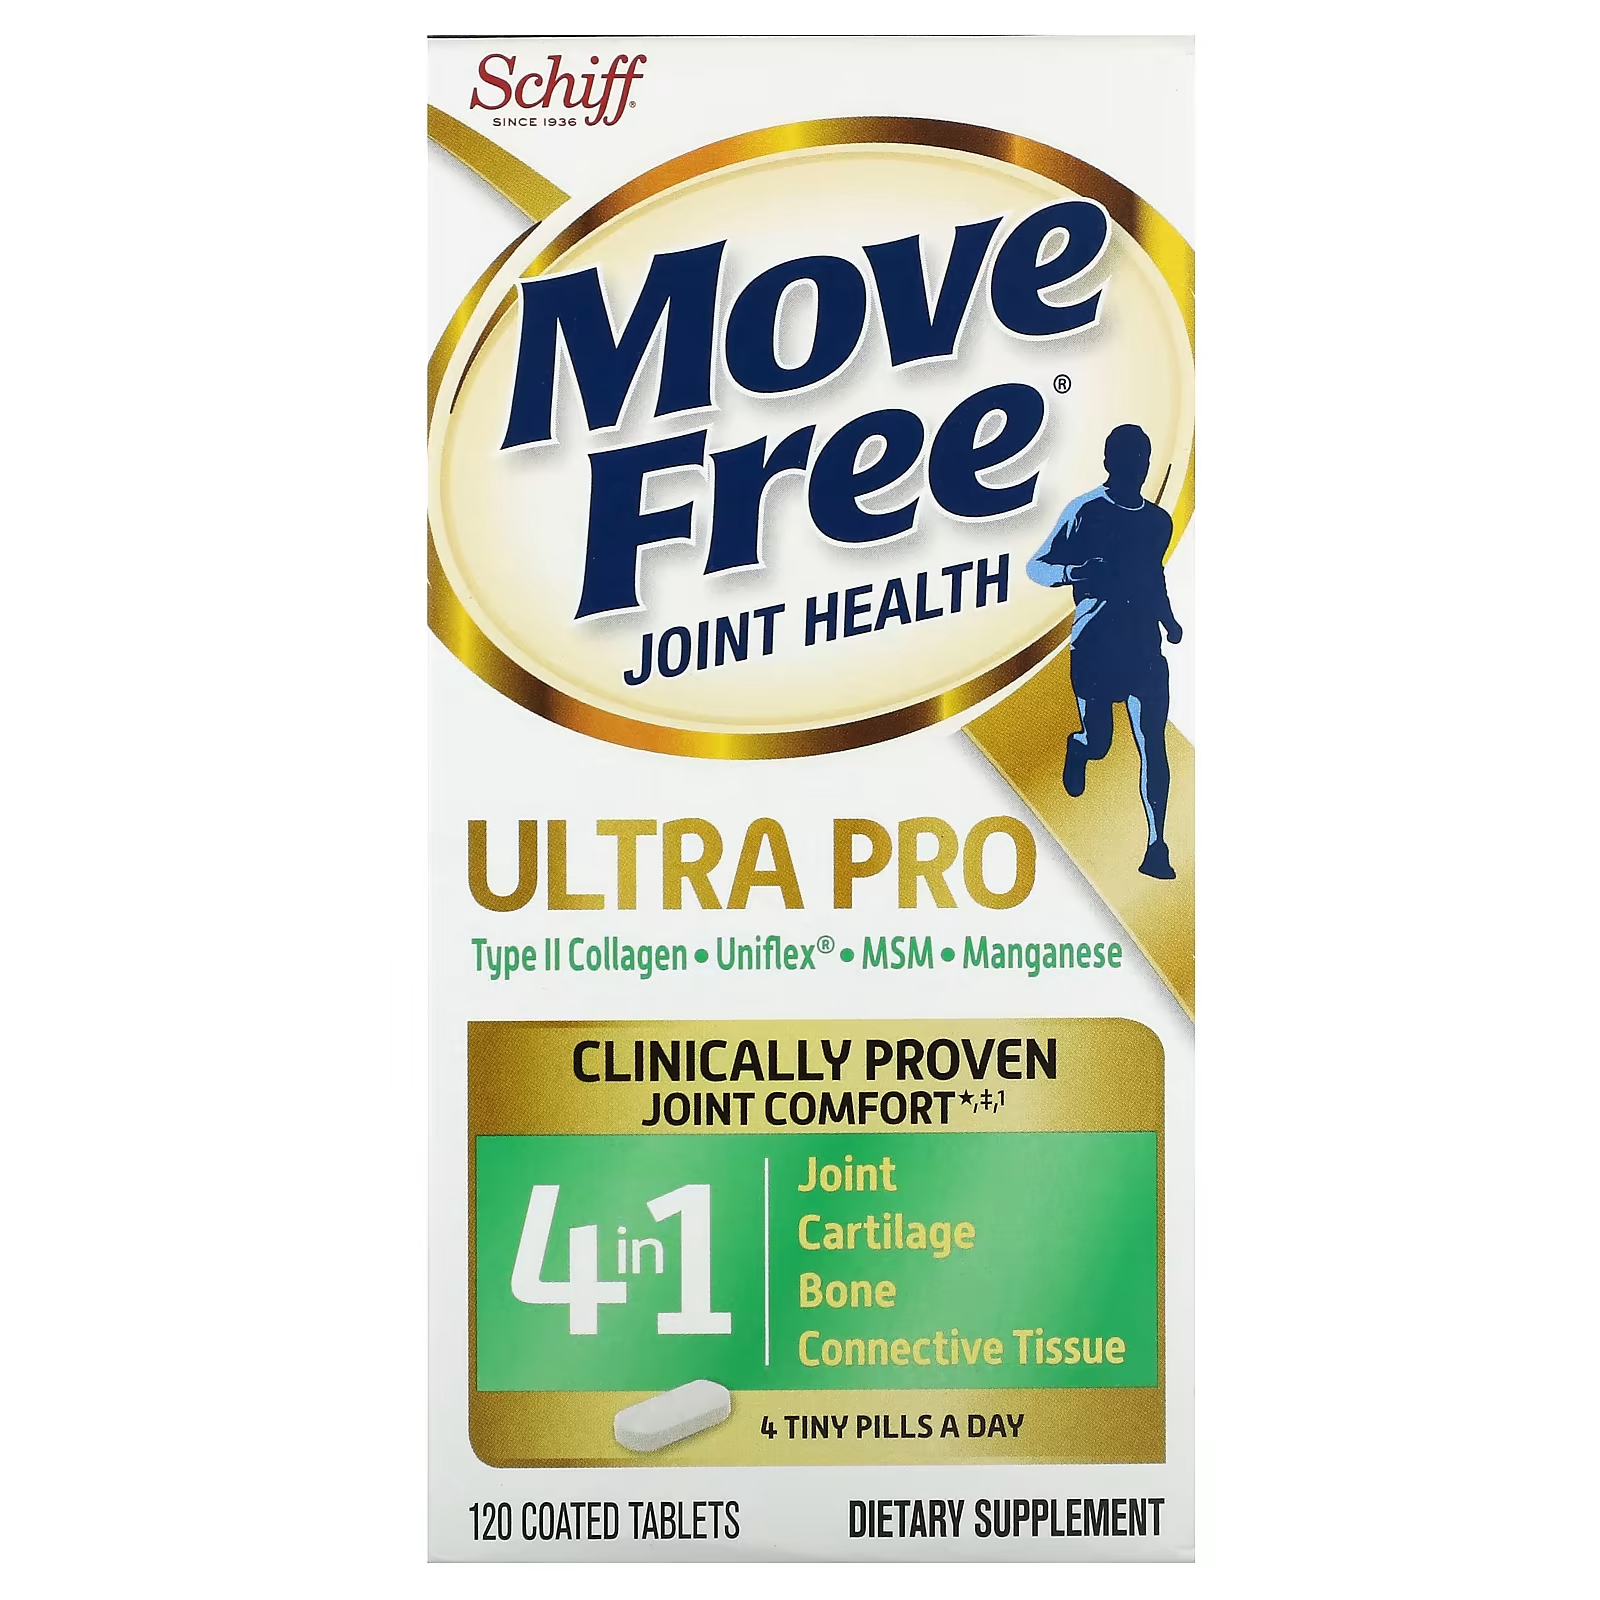 Пищевая добавка Schiff Move Free Joint Health Ultra Pro schiff move free advanced добавка для здоровья суставов с глюкозамином хондроитином и мсм 120 таблеток покрытых оболочкой